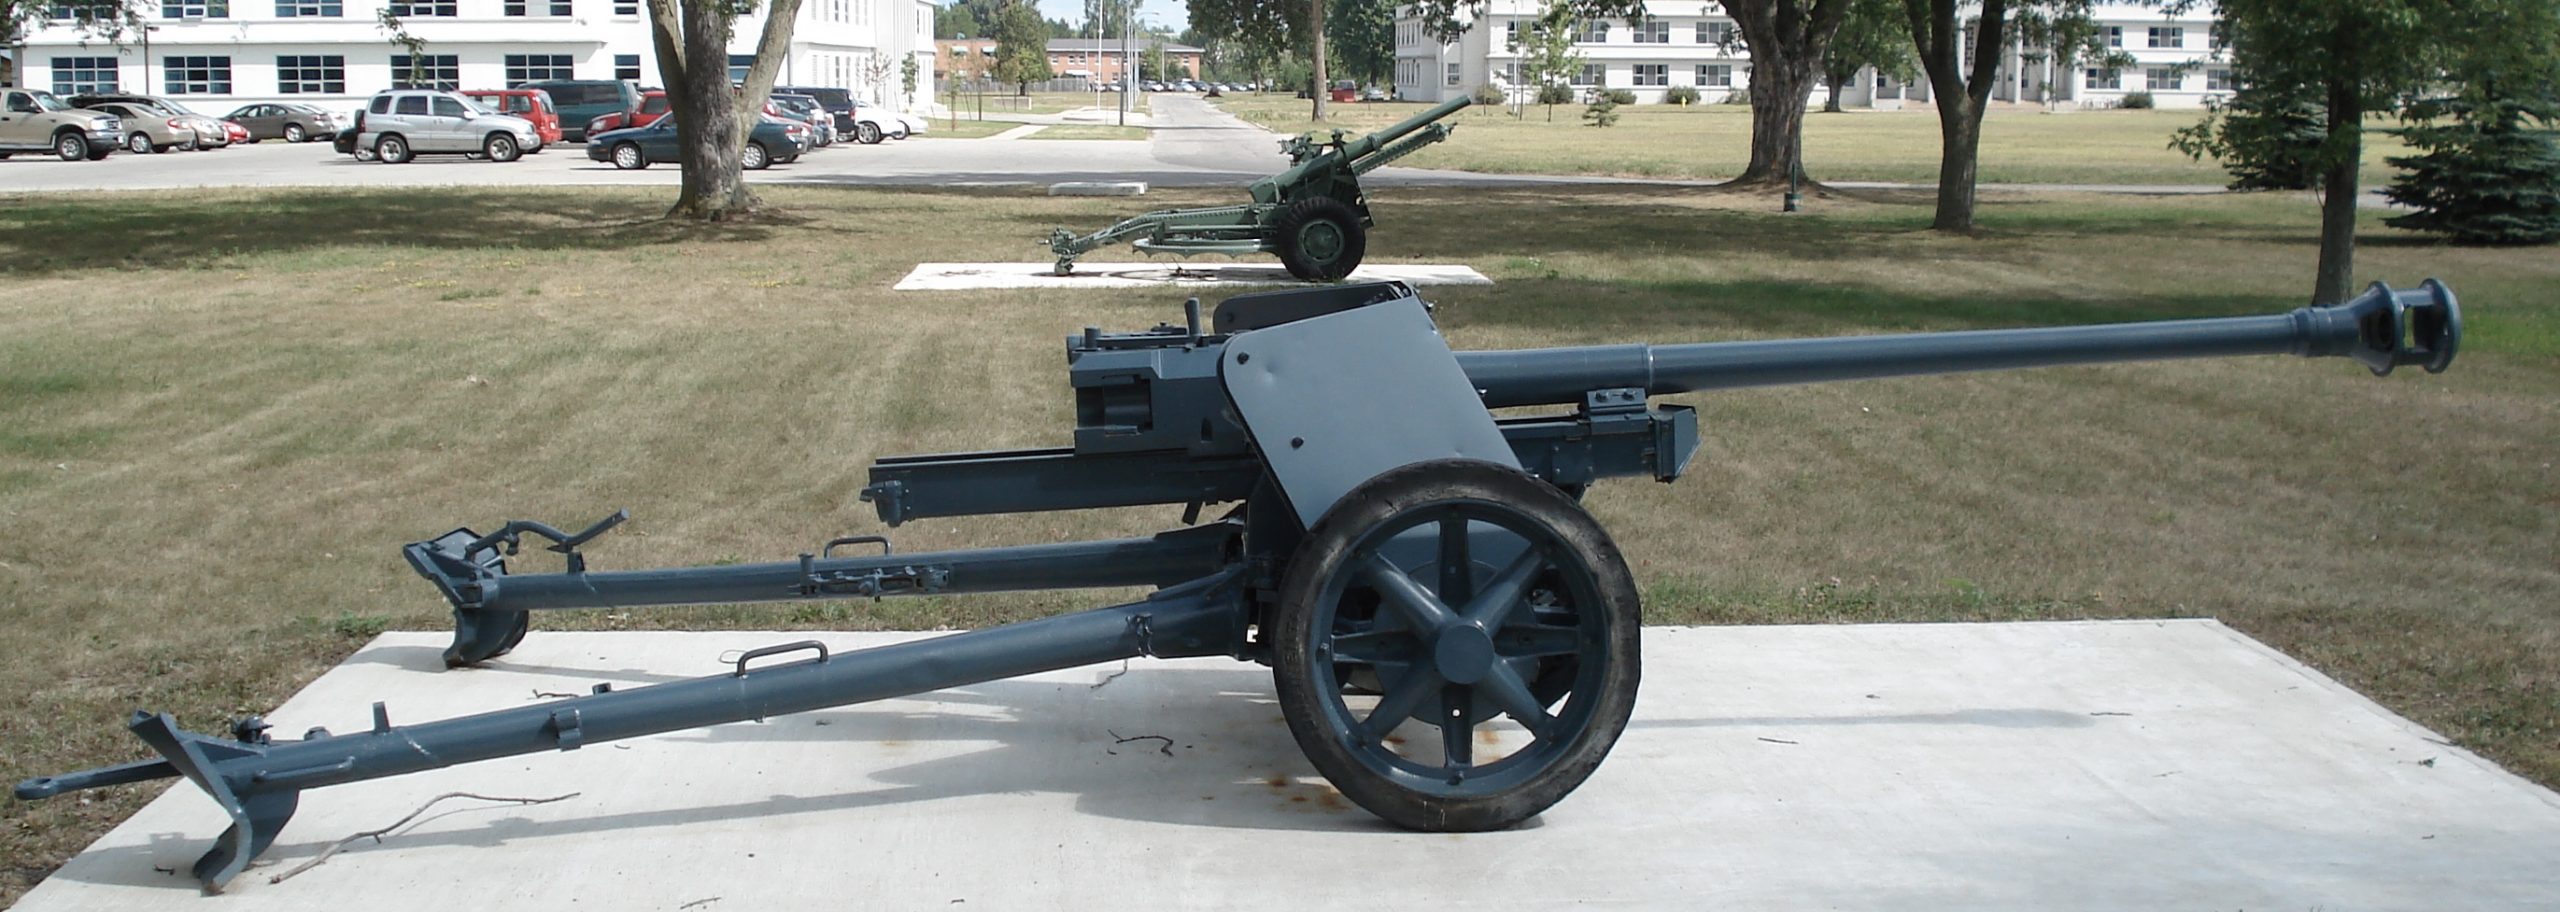 Германская 75мм противотанковая пушка Pak 40